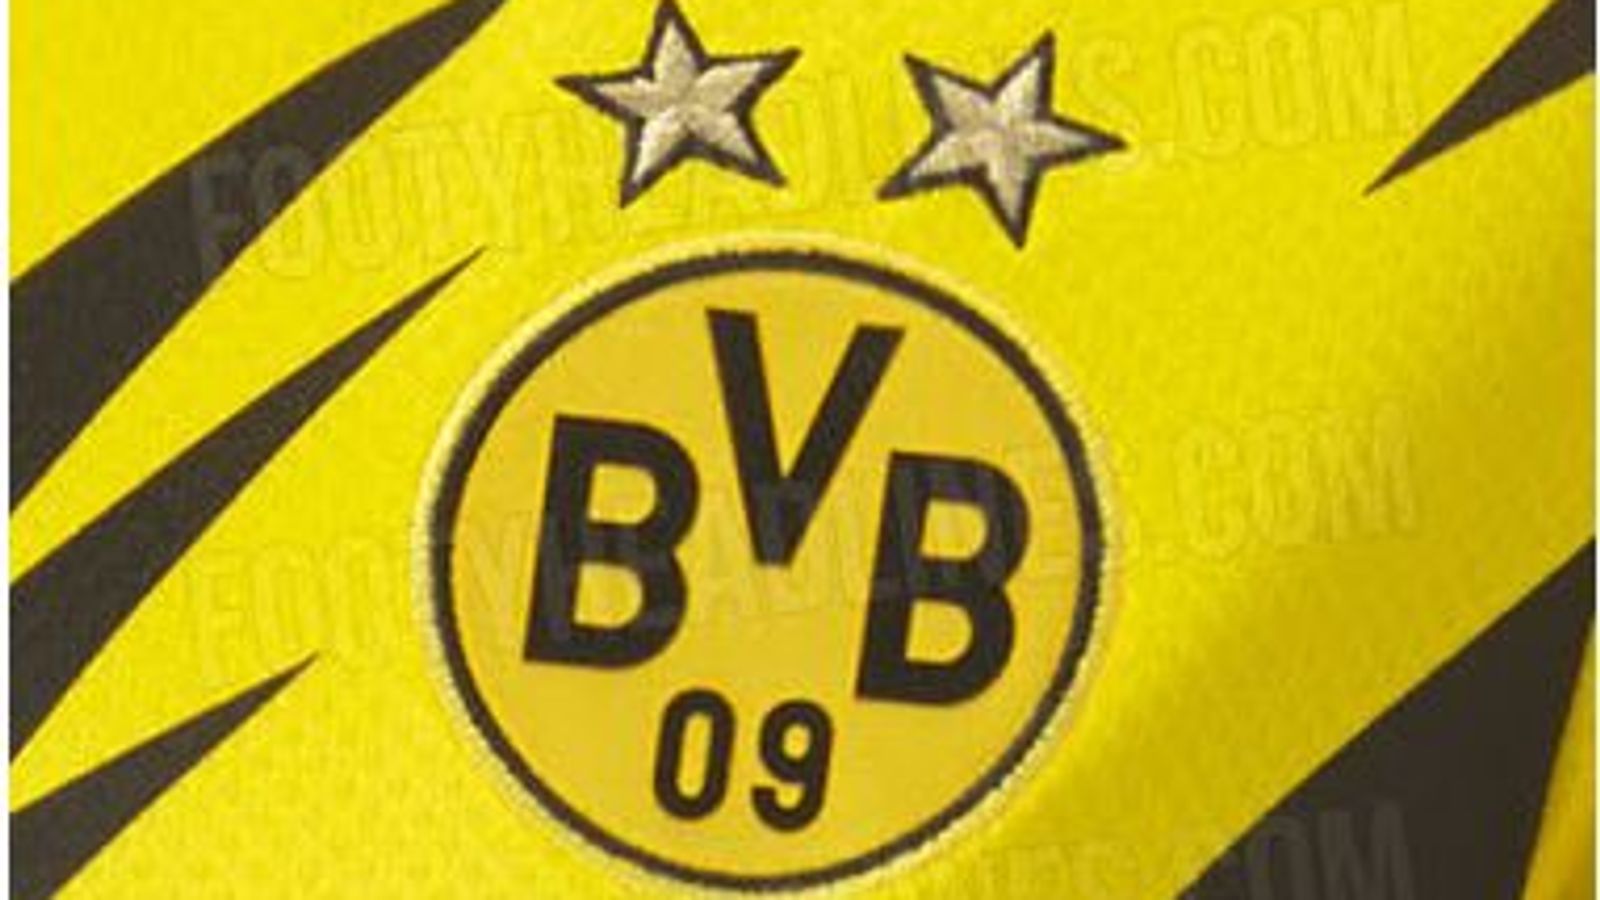 BVB News: Trikot von Borussia Dortmund wohl geleakt ...